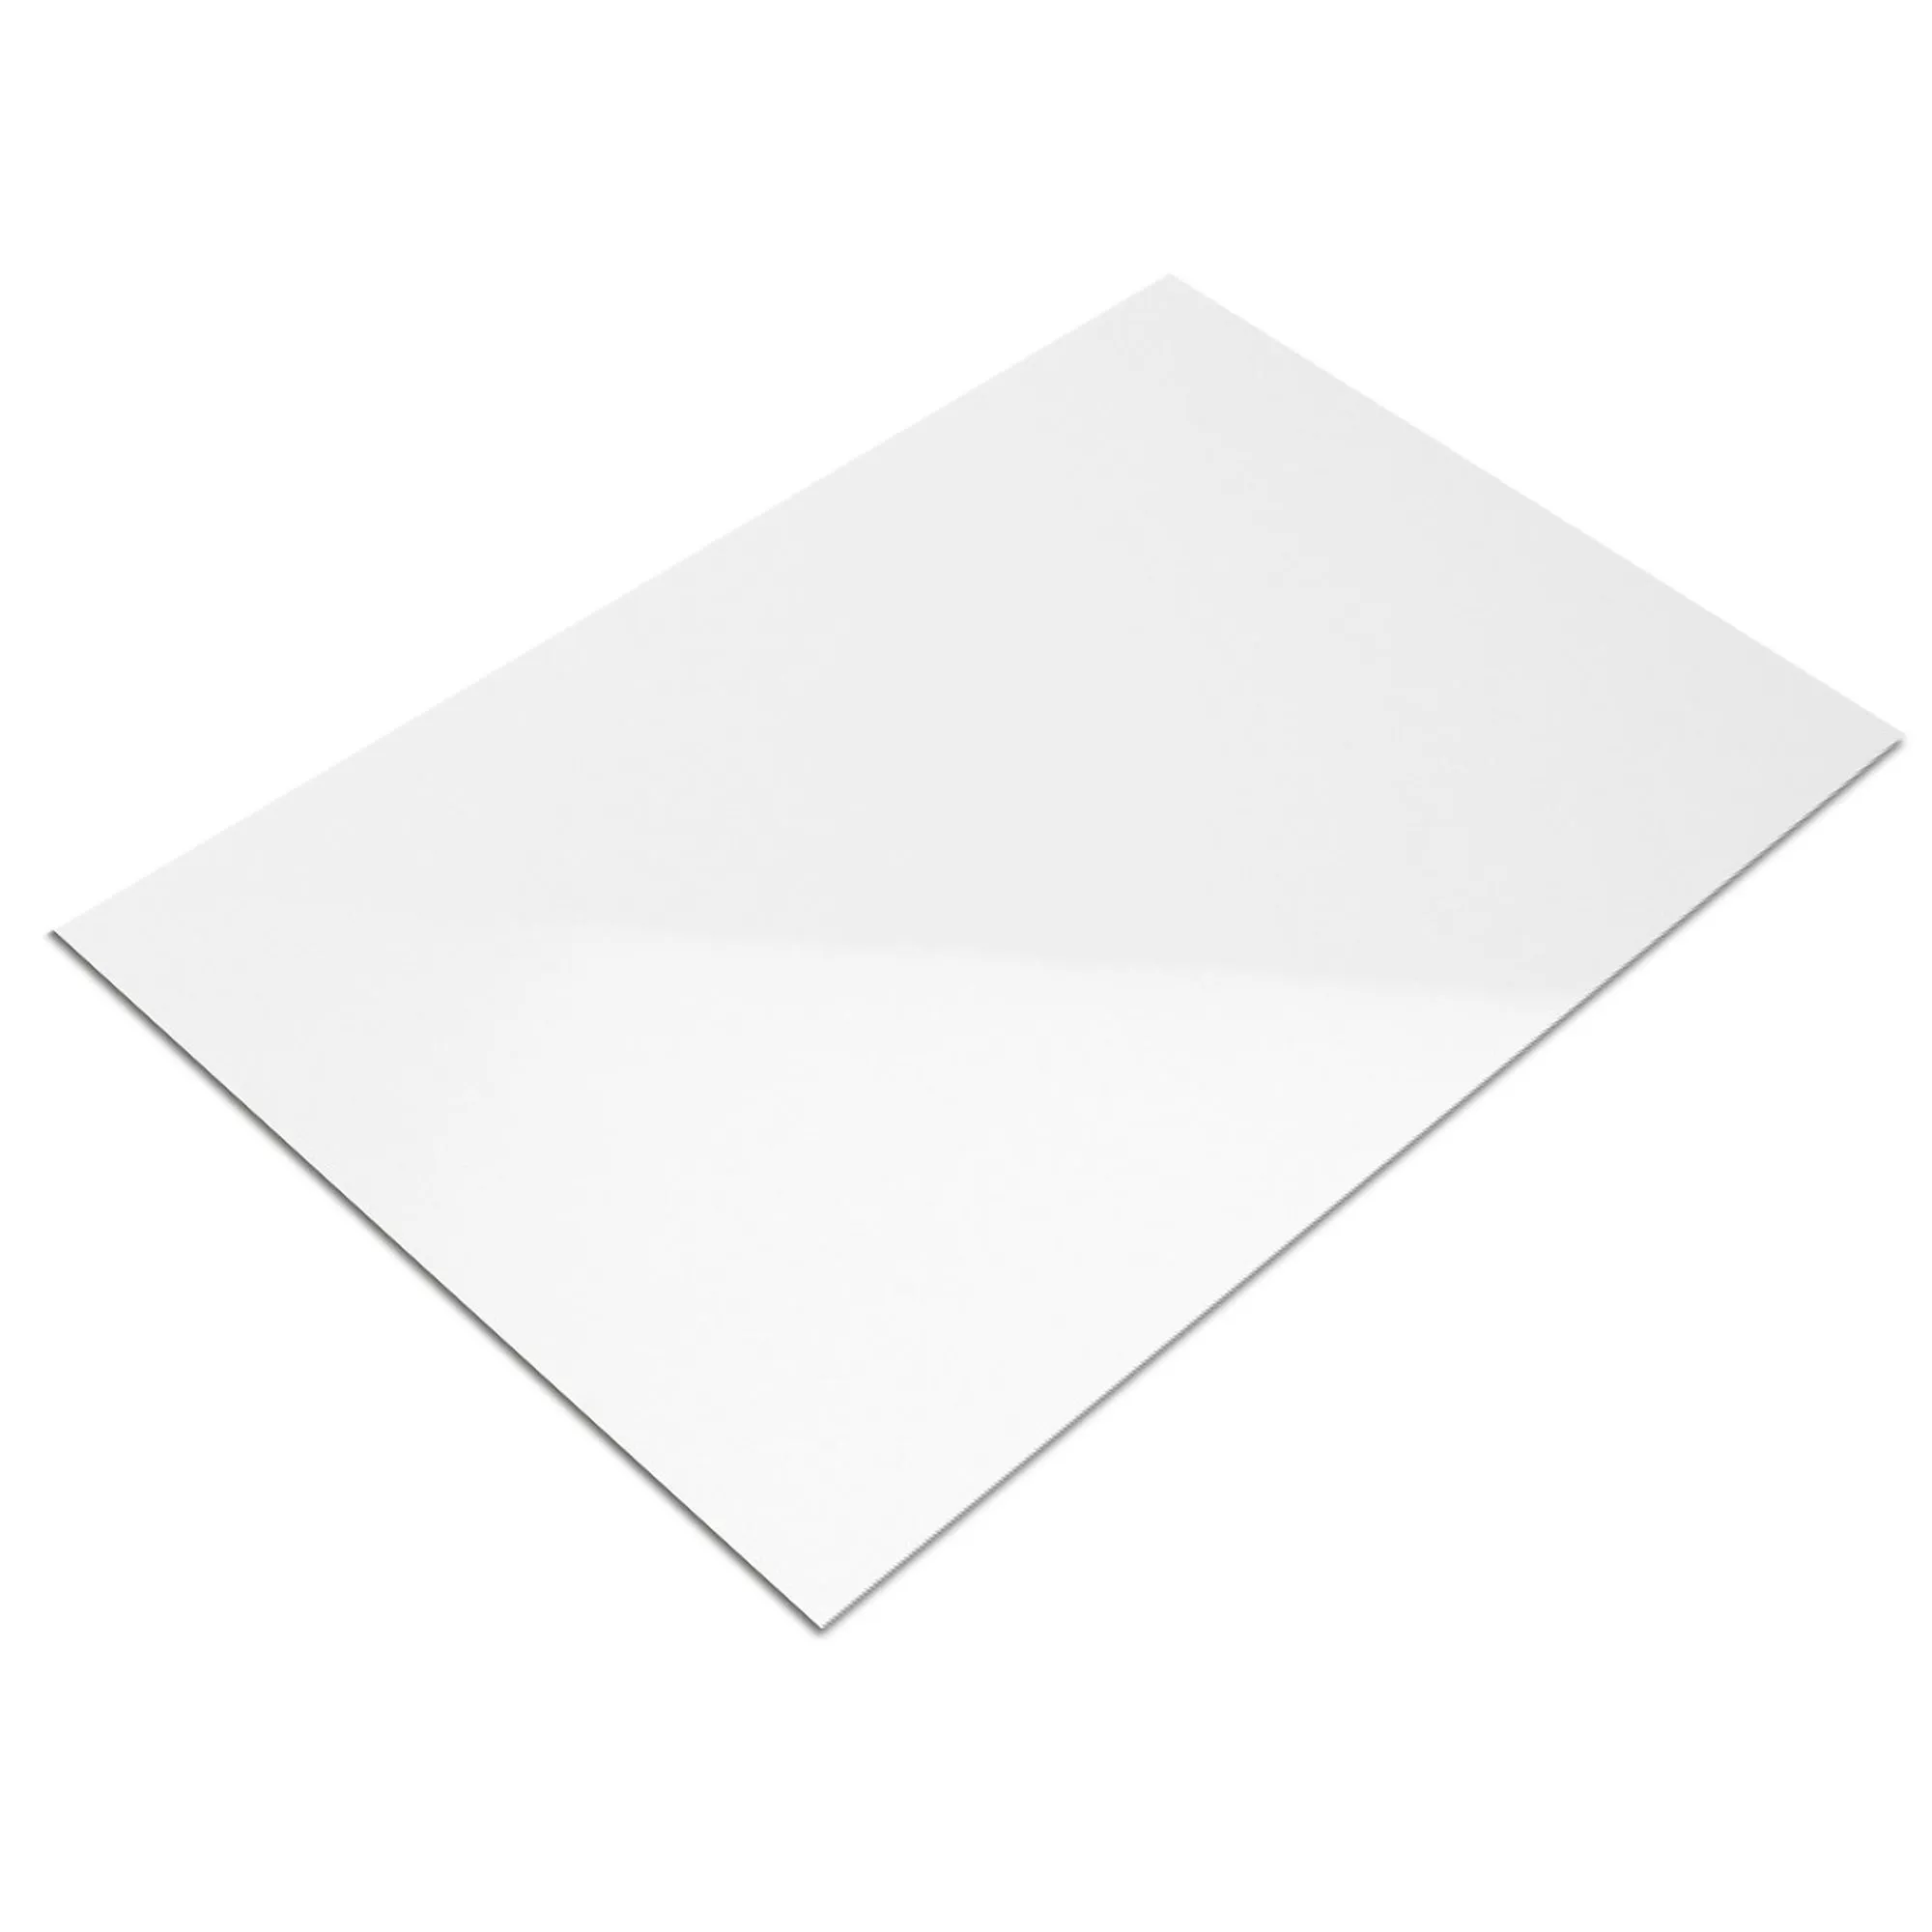 Muestra Revestimiento Fenway Blanco Brillante 20x25cm